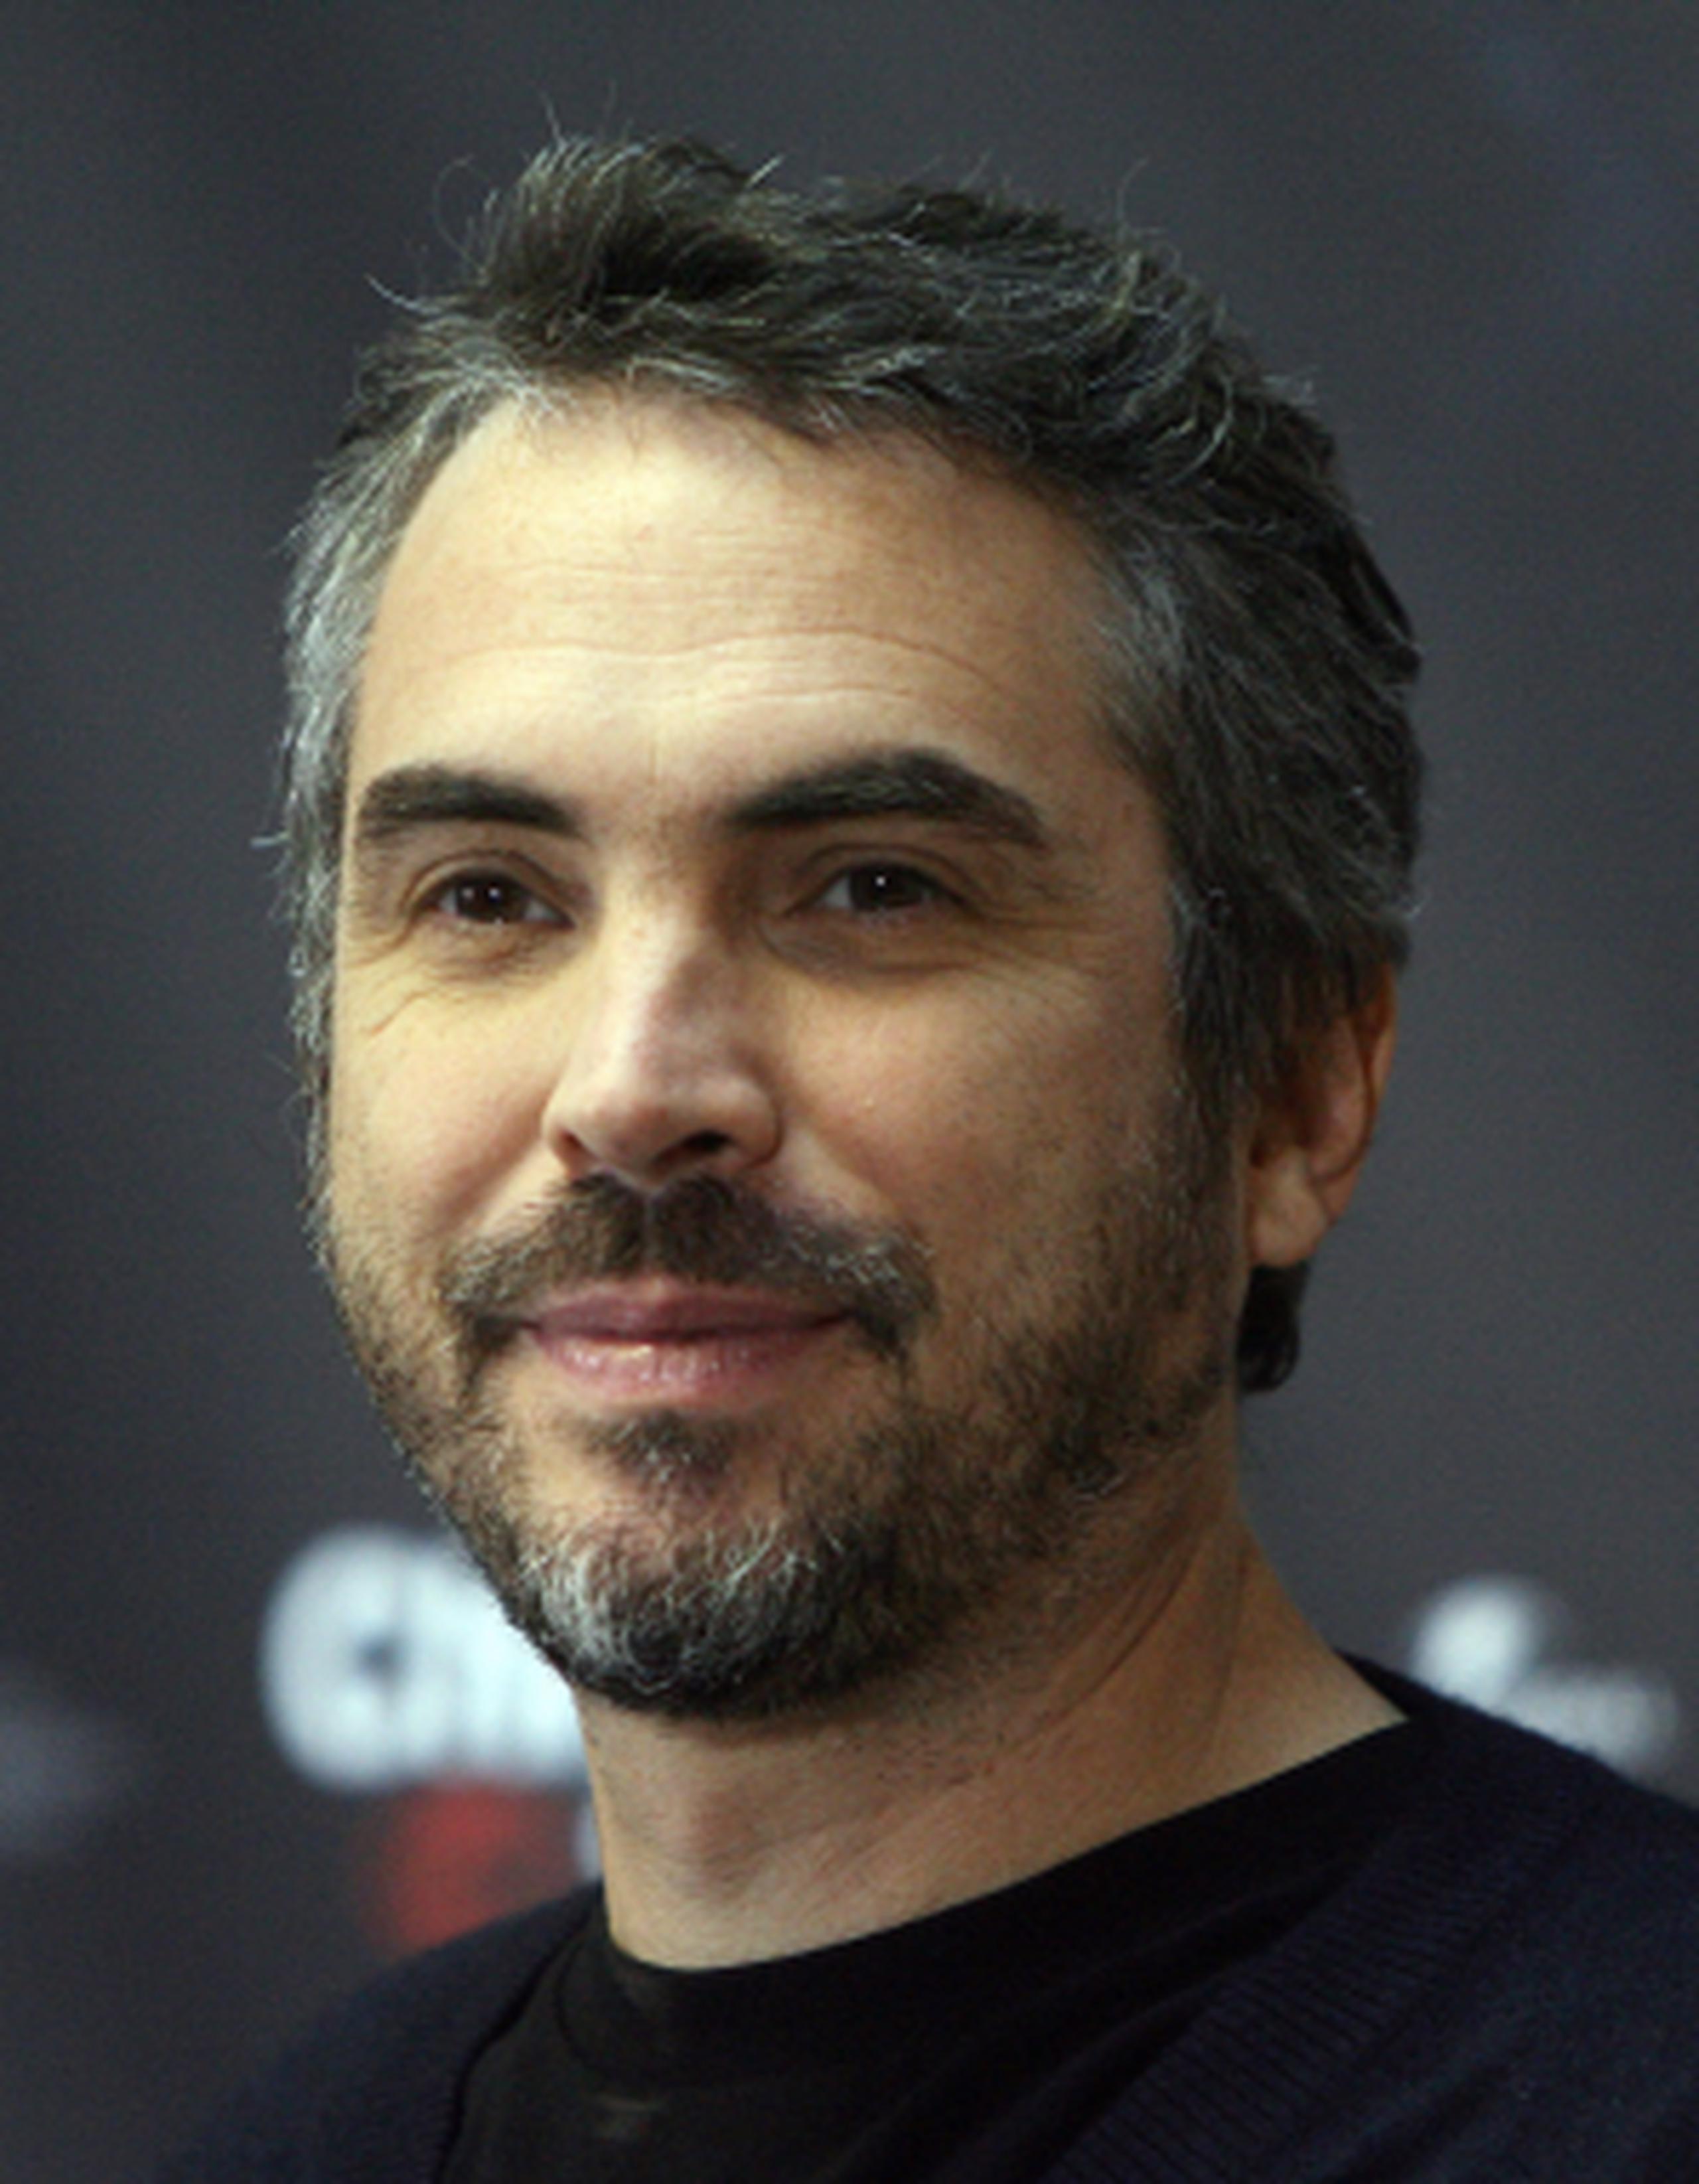 La búsqueda de lo auténticamente mexicano en los Oscar se ha centrado principalmente en Alfonso Cuarón, director de la película que cuenta la odisea de unos astronautas perdidos en el espacio. (DDP)